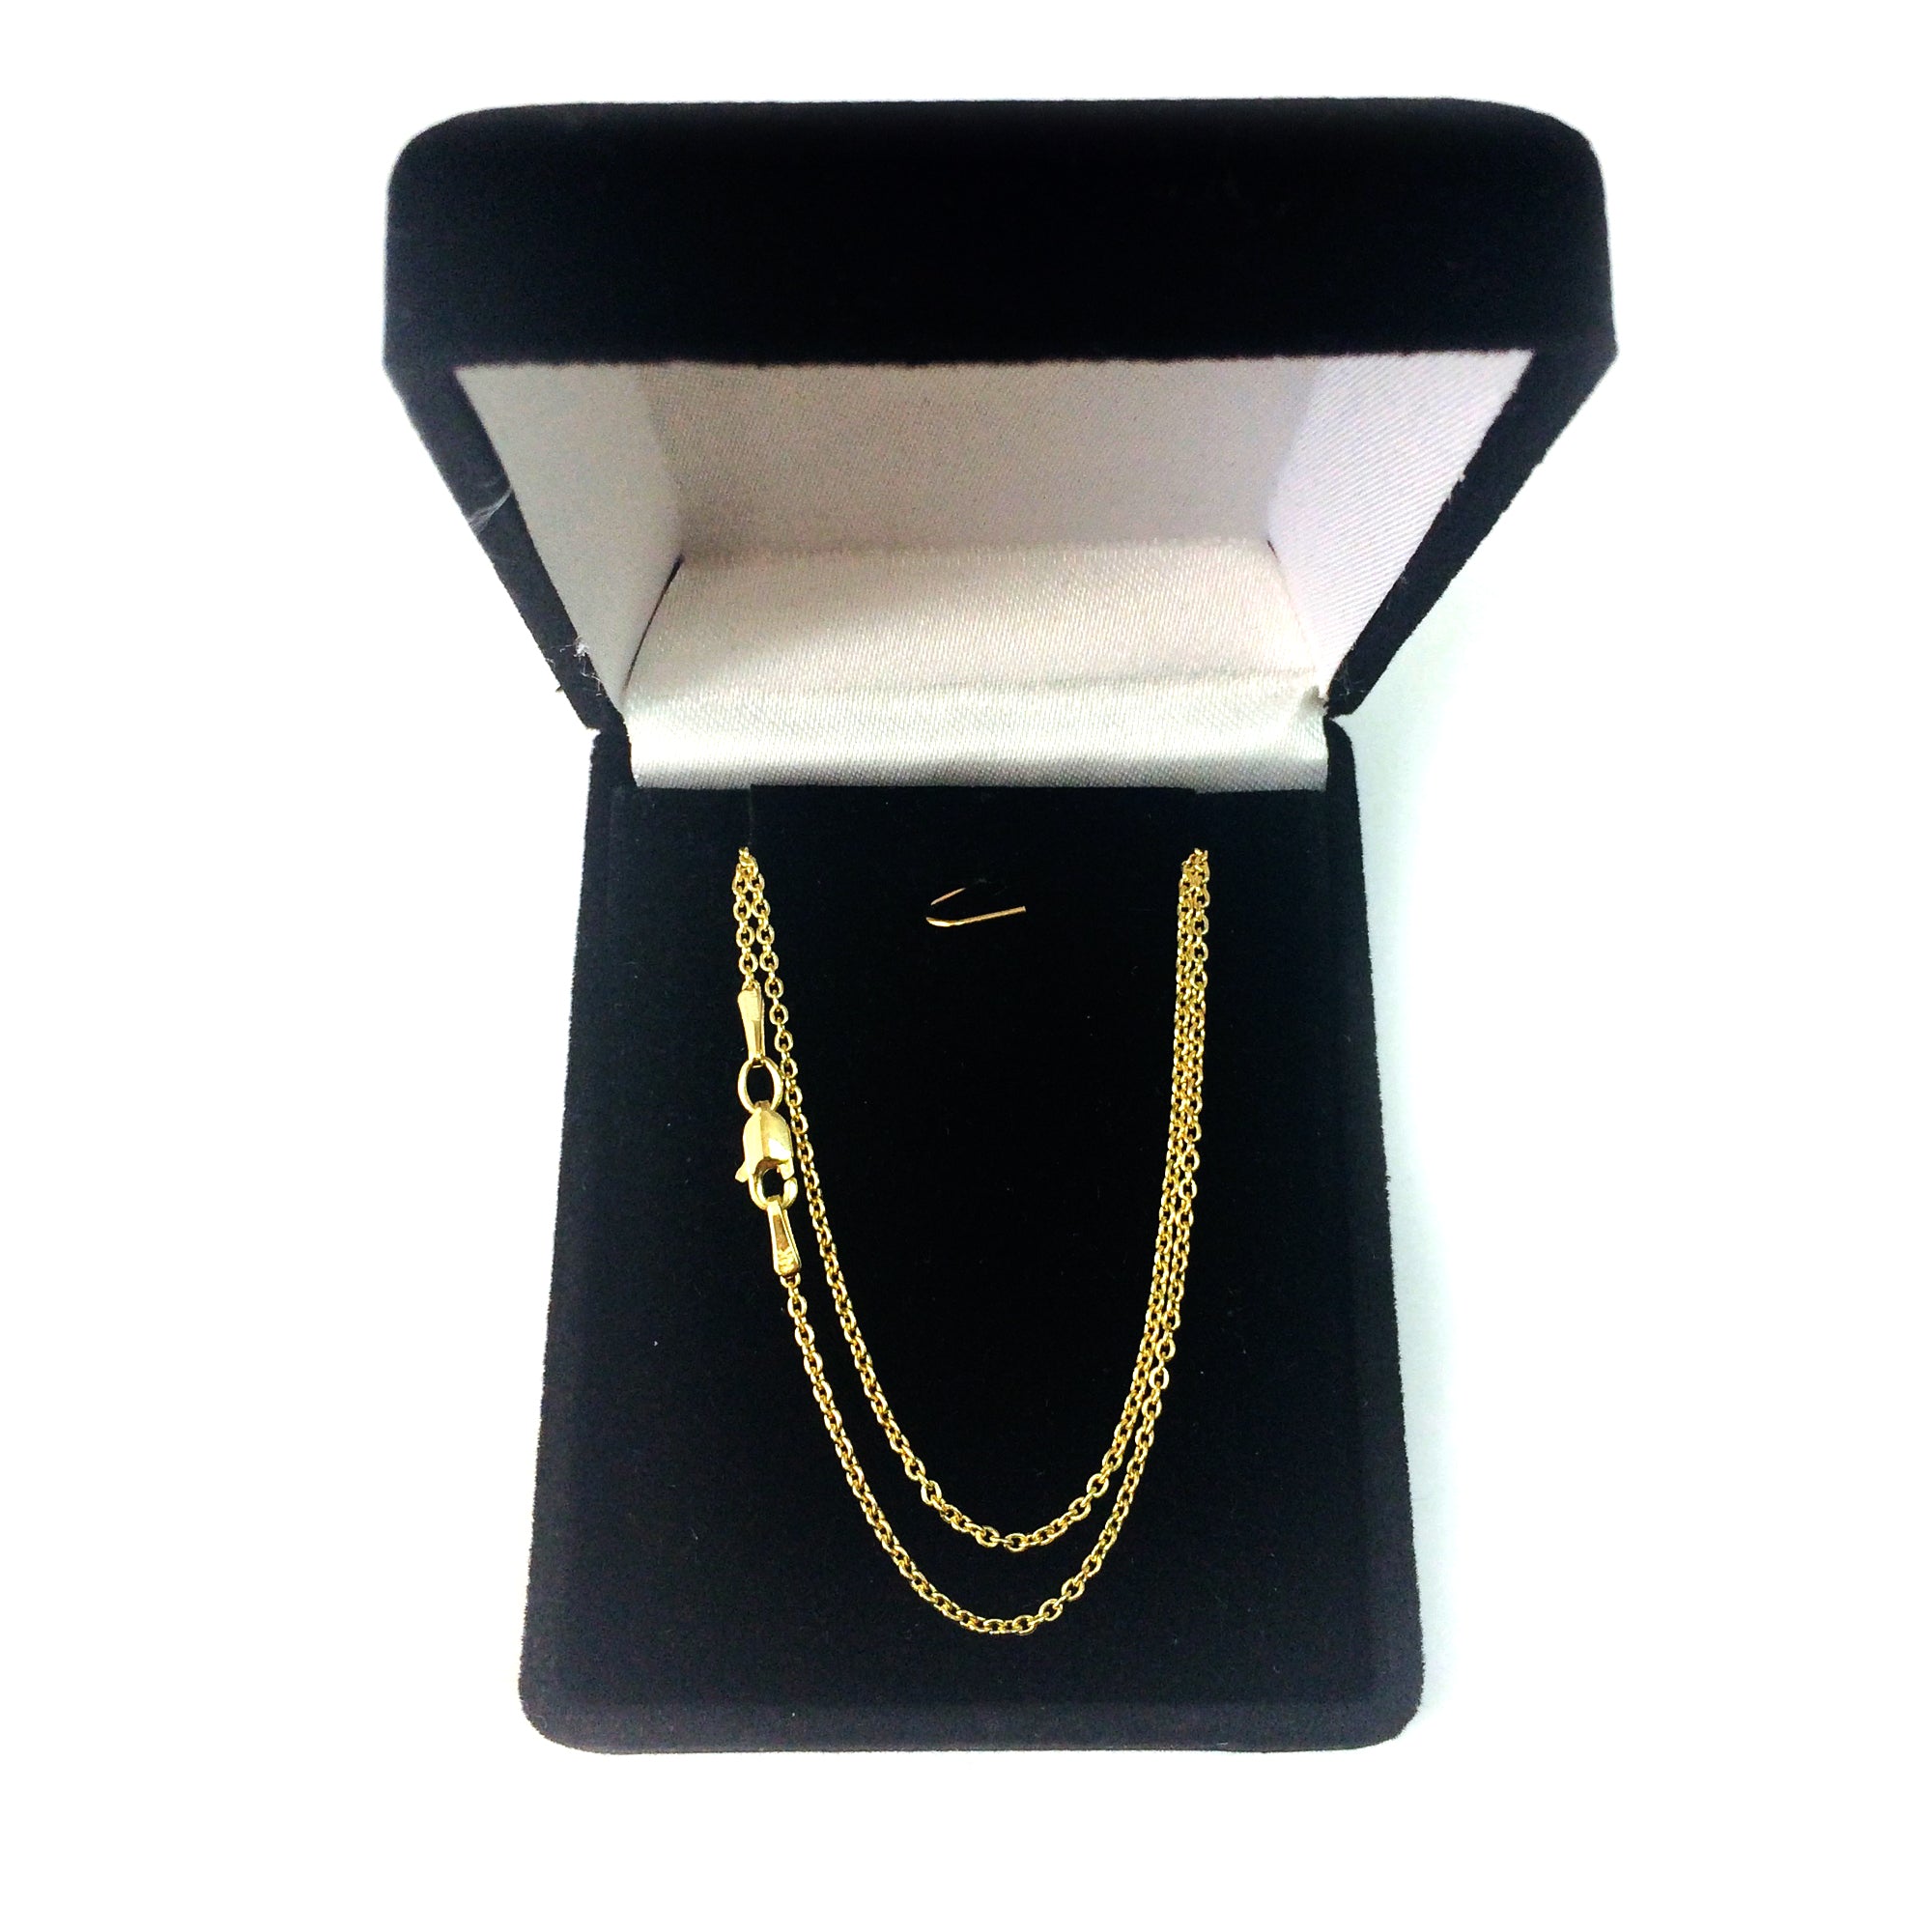 Collana a catena Forsantina in oro giallo 14k, gioielleria raffinata da 1,5 mm per uomo e donna